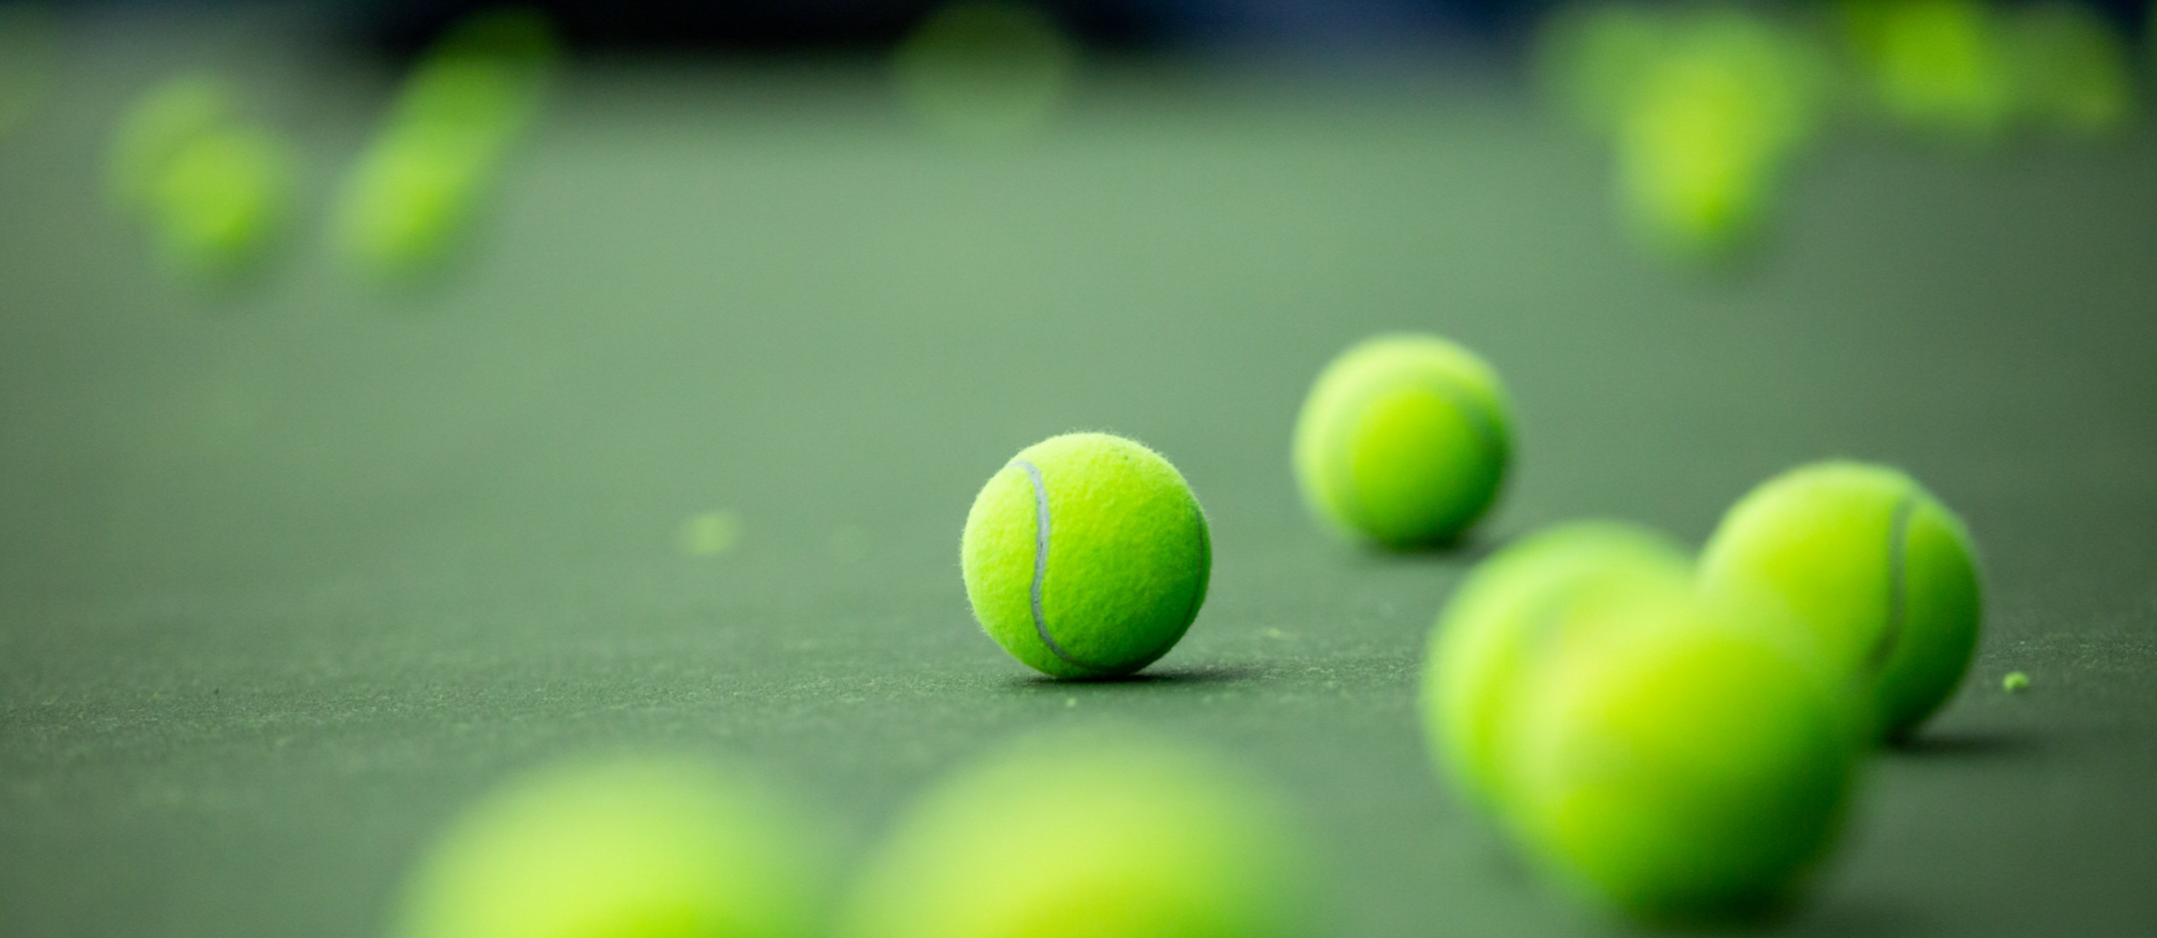 tennis balls on court